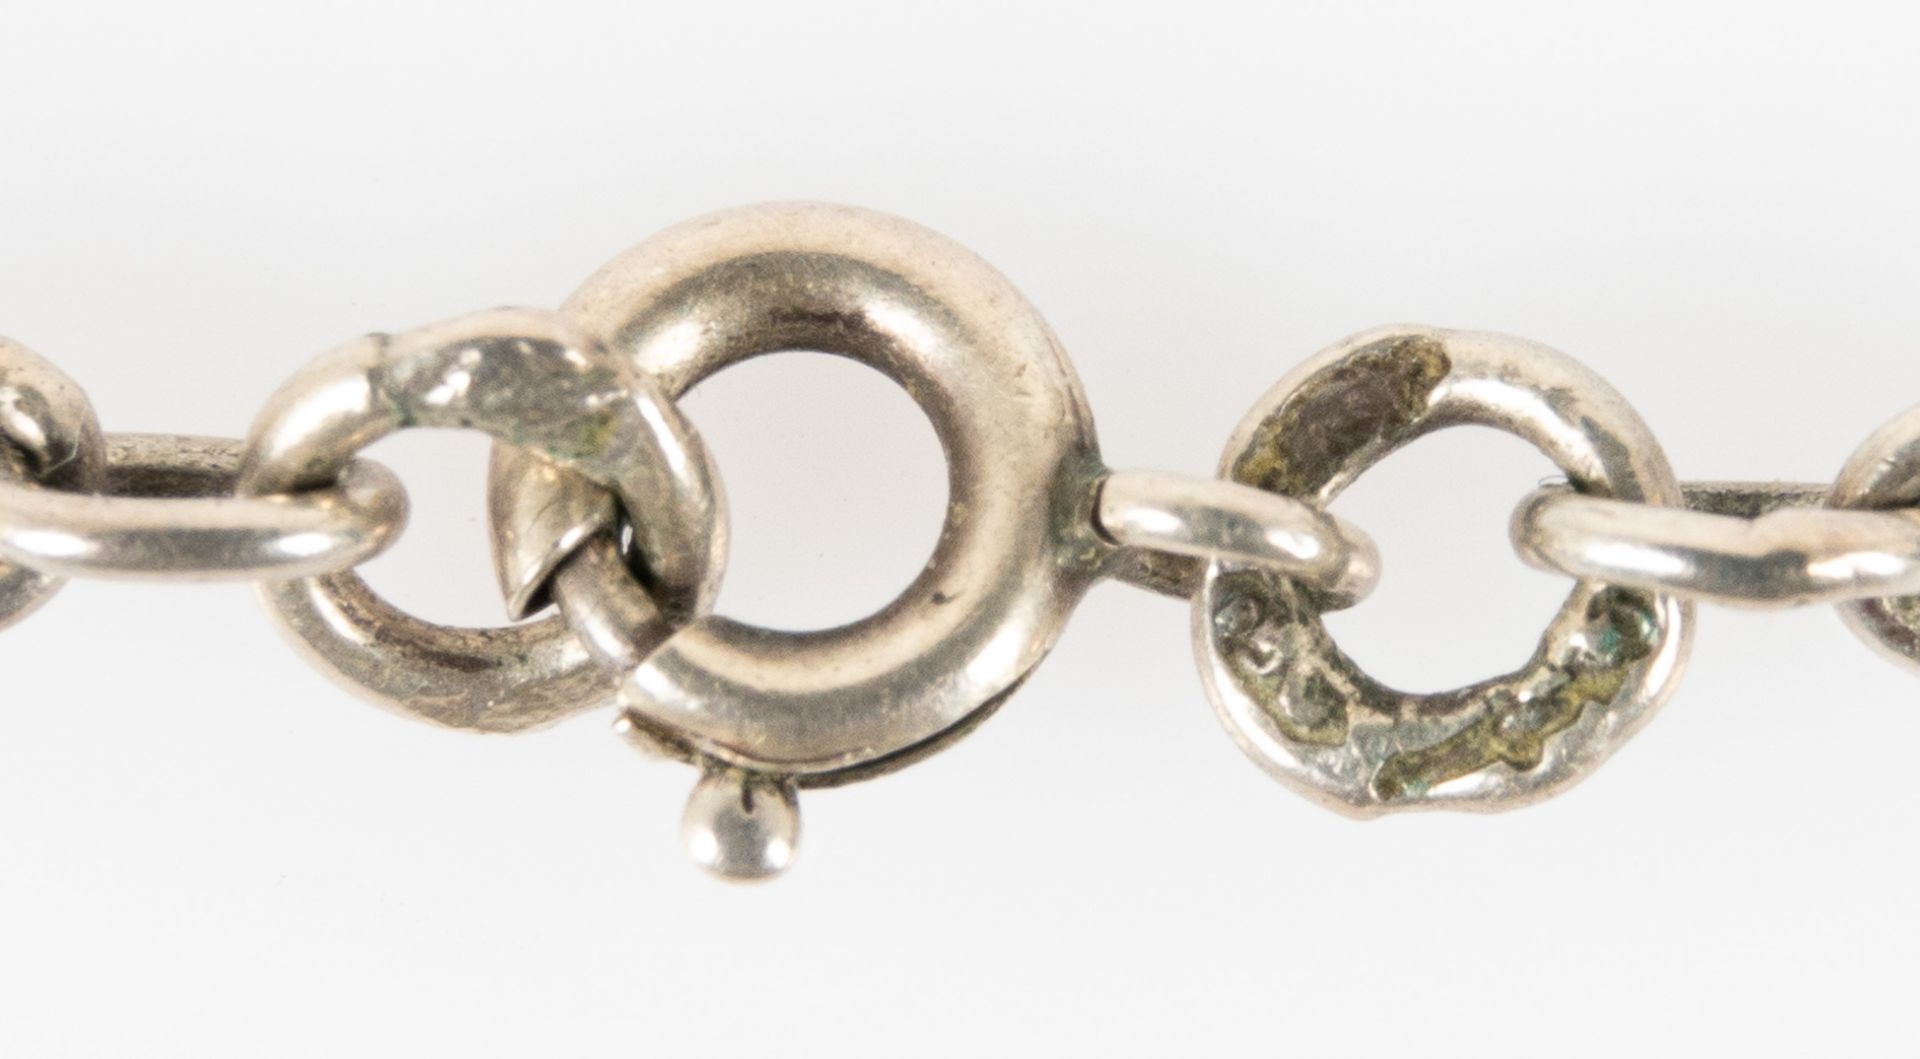 2 versch. silberne Halsketten, Länge je ca. 40 cm, versch. Ausführungen, Größen, Alter & Erhalt. - Image 4 of 5